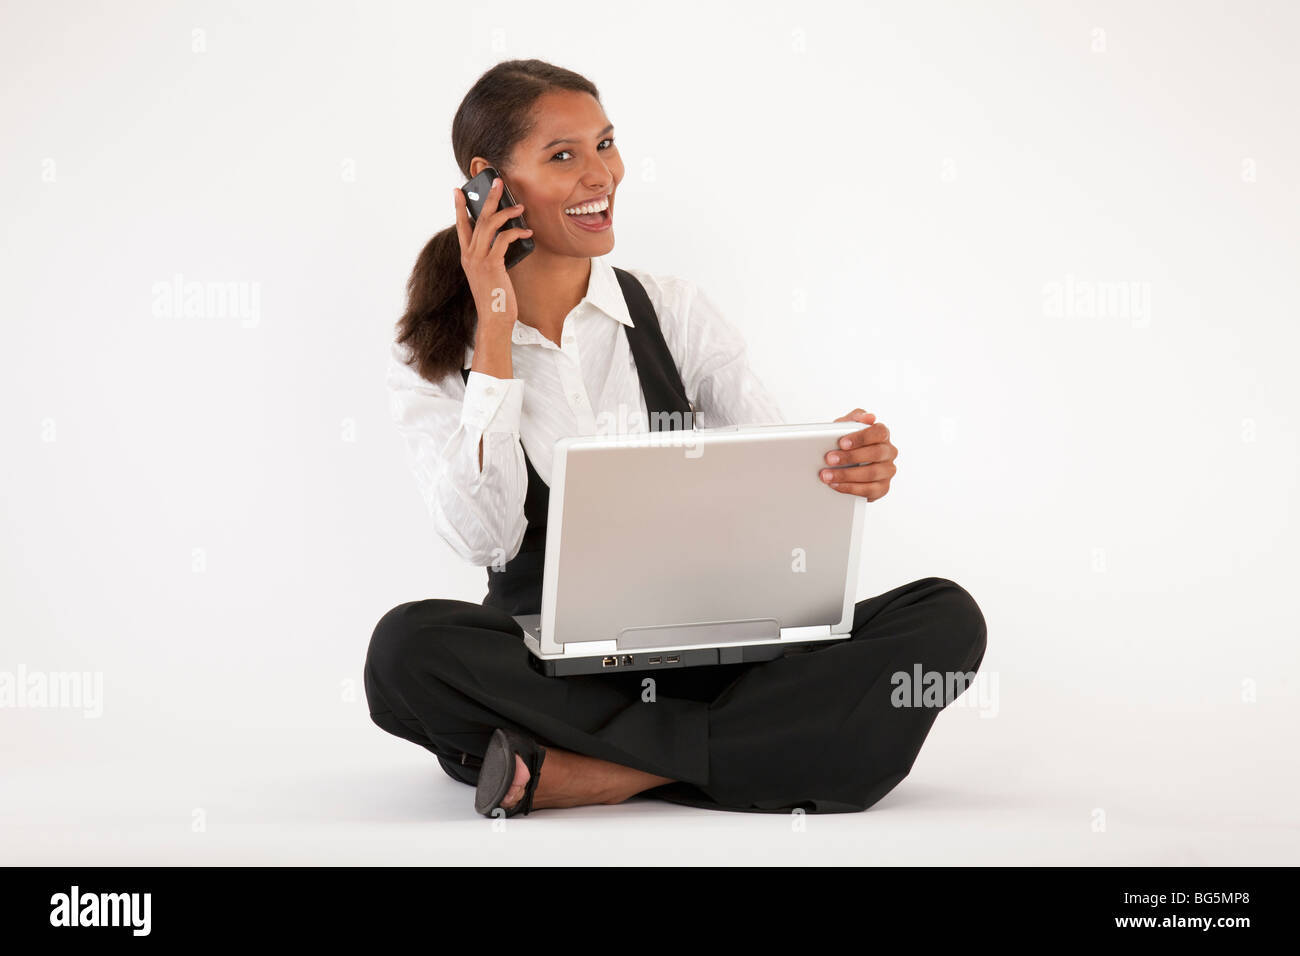 Jeune femme assise sur le sol à l'aide d'ordinateur portable et téléphone cellulaire. Format horizontal. Banque D'Images